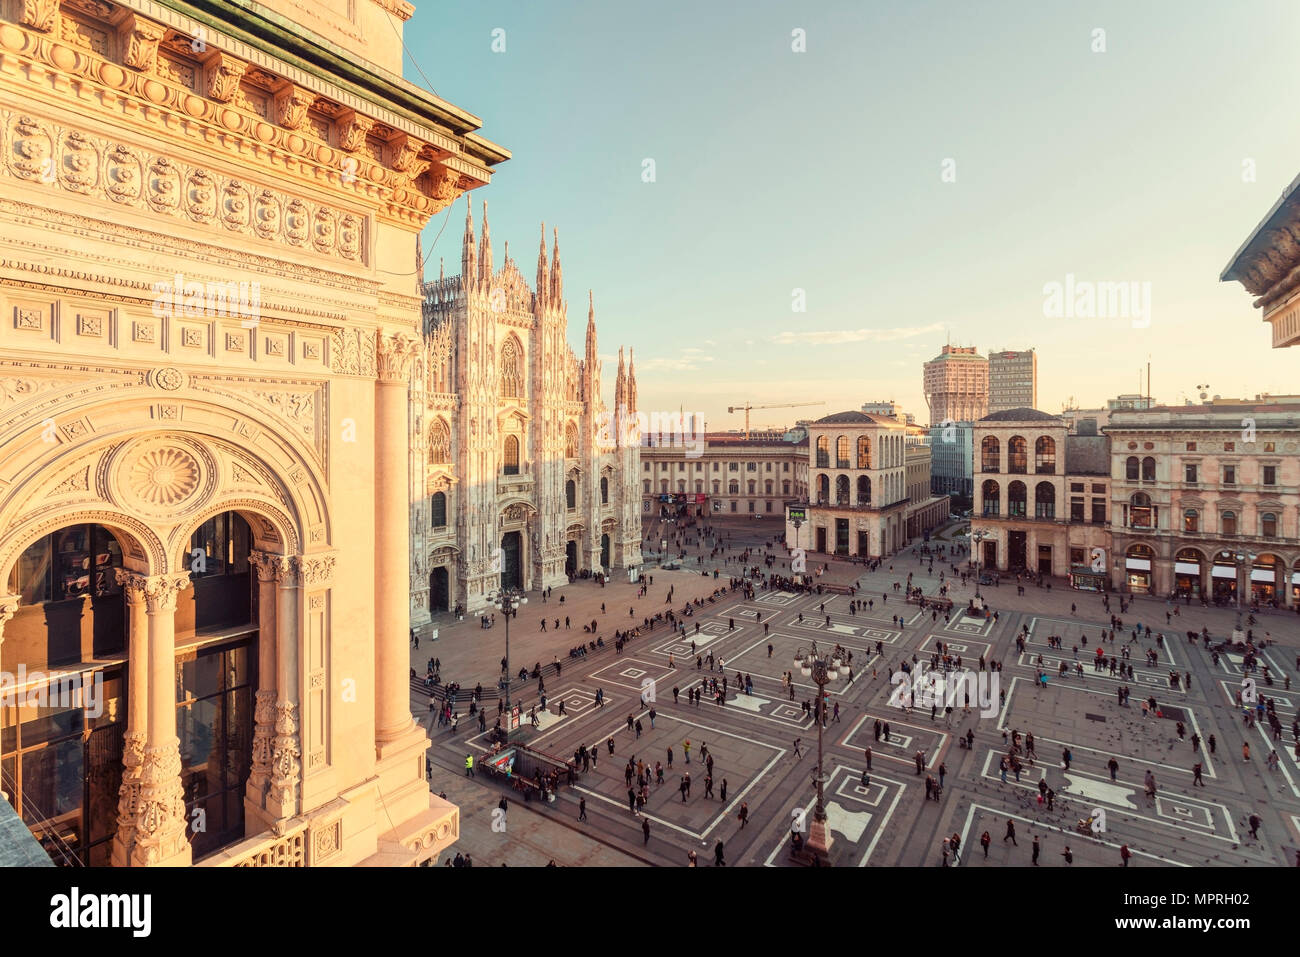 L'Italie, la Lombardie, la Piazza del Duomo de Milan vu de la Galleria Vittorio Emanuele II Banque D'Images